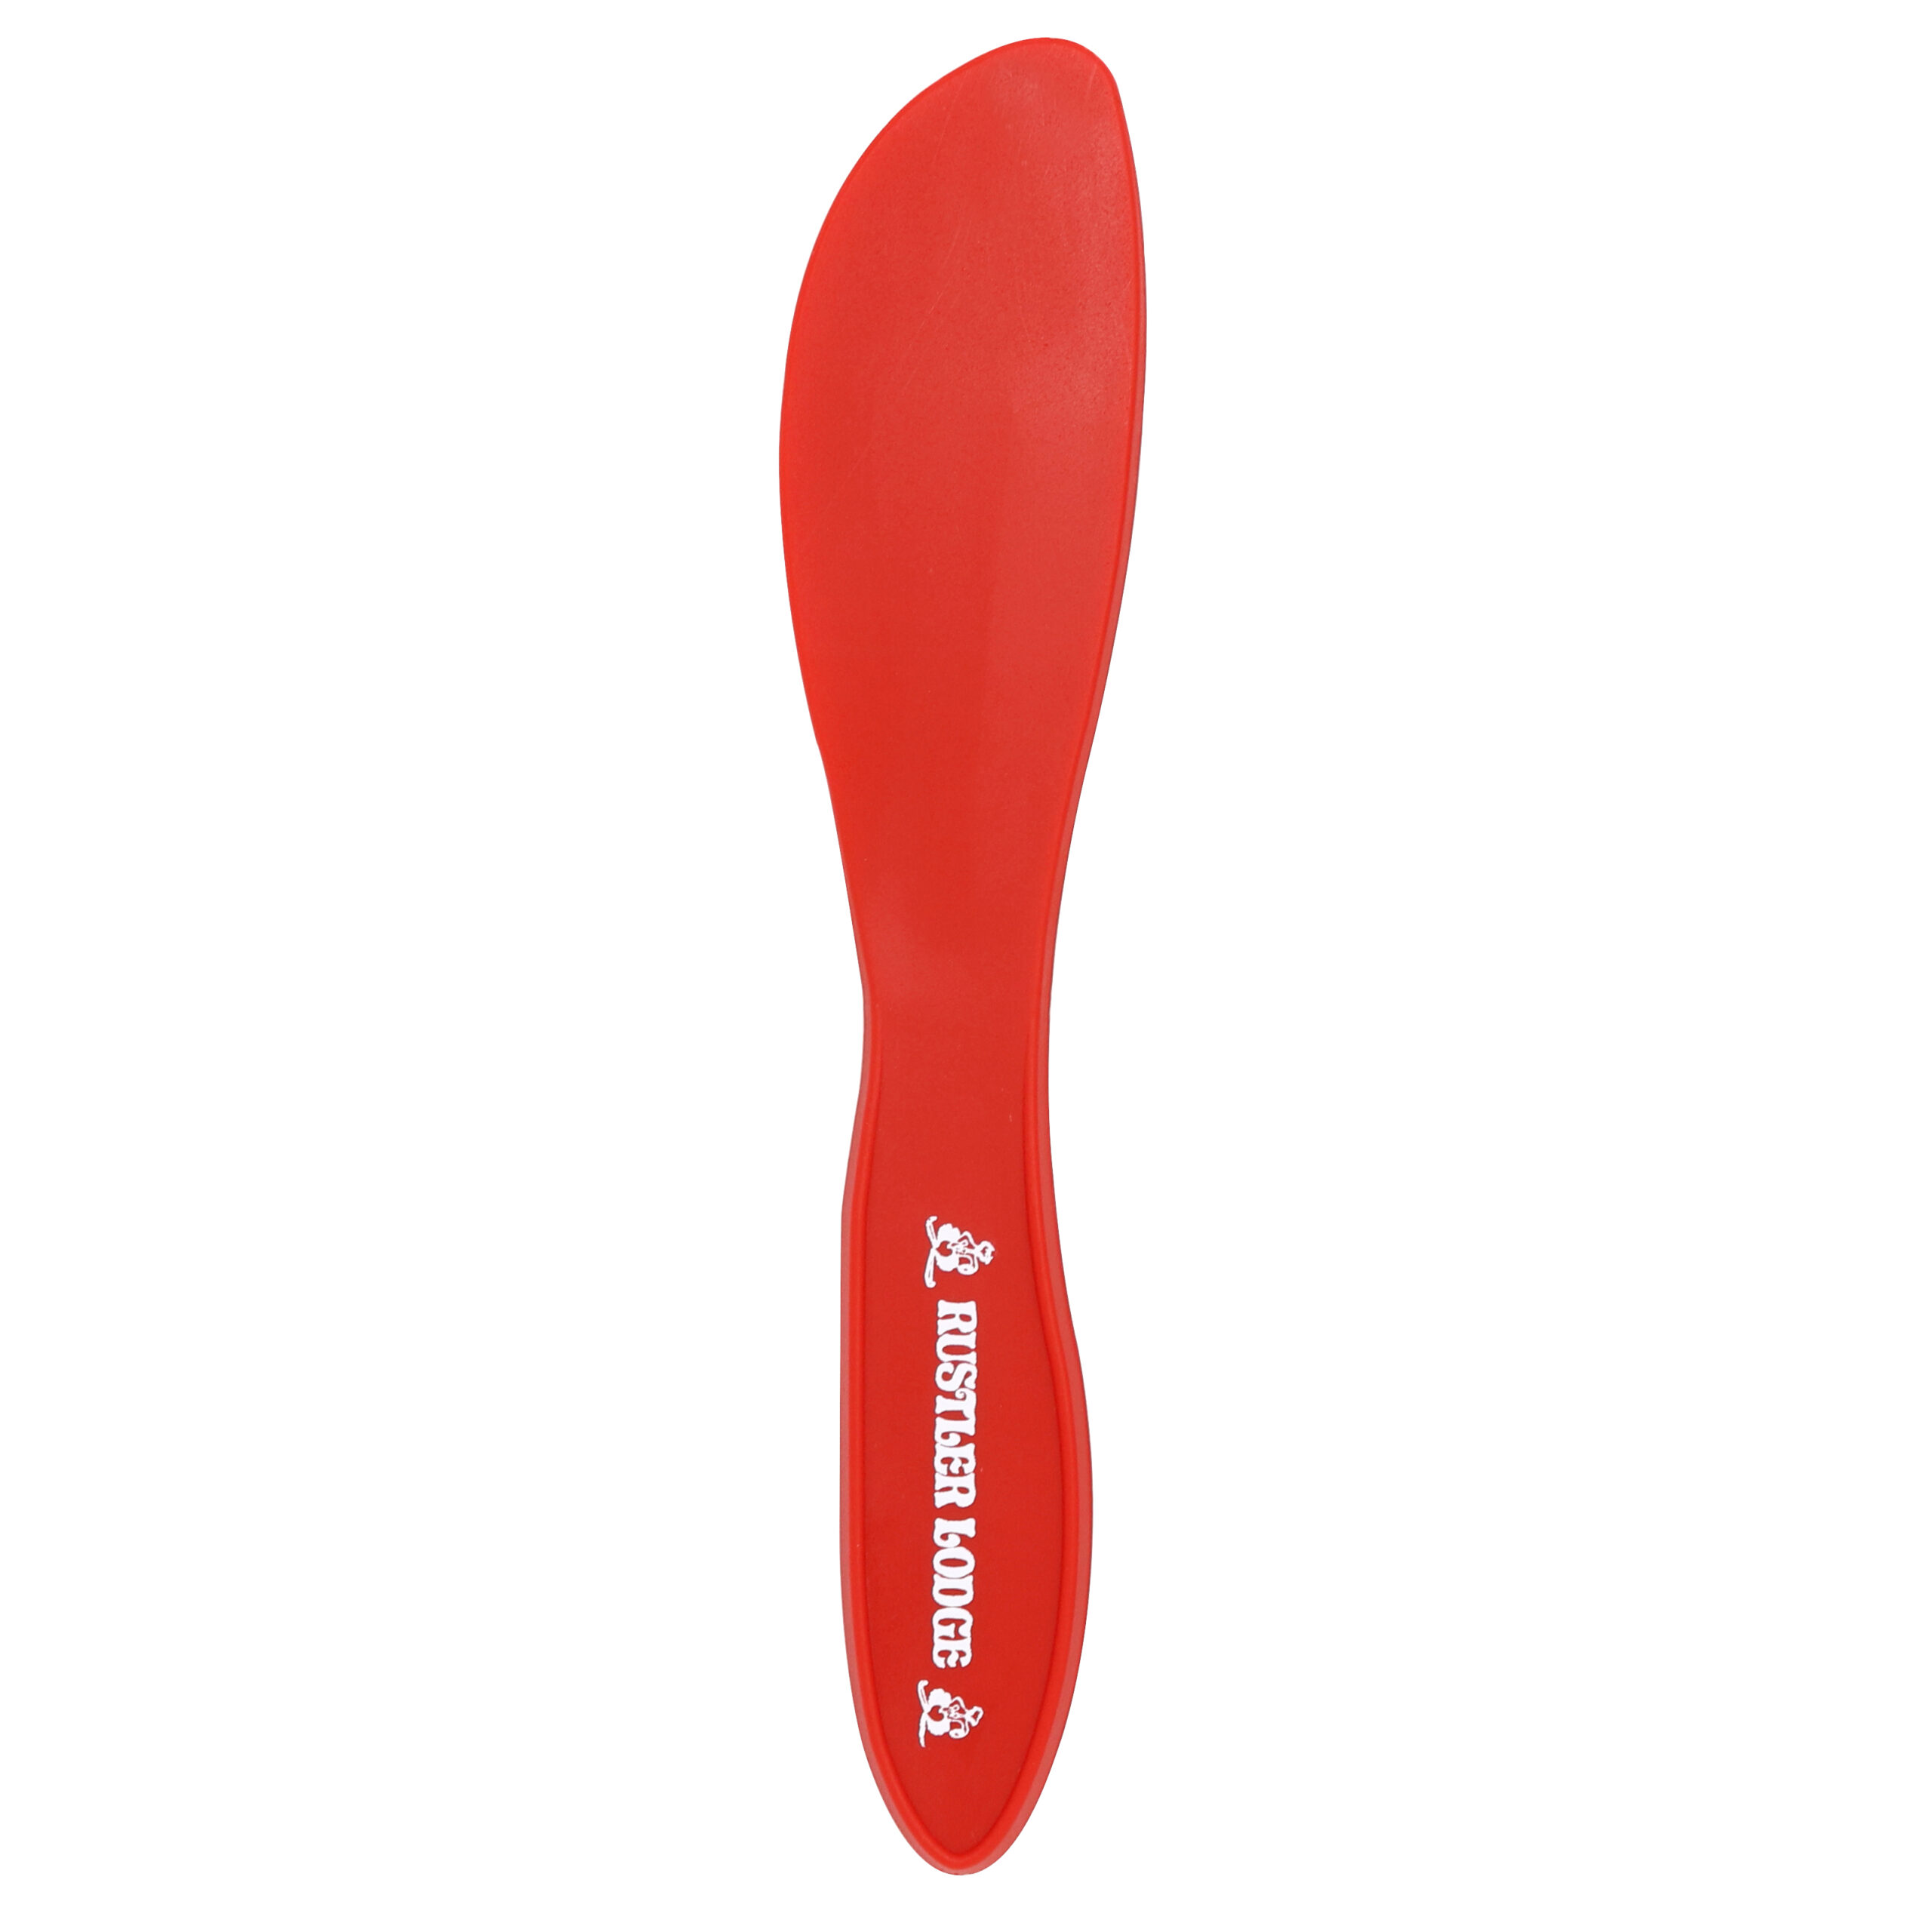 Red Plastic Spreader Knife - Imprintable